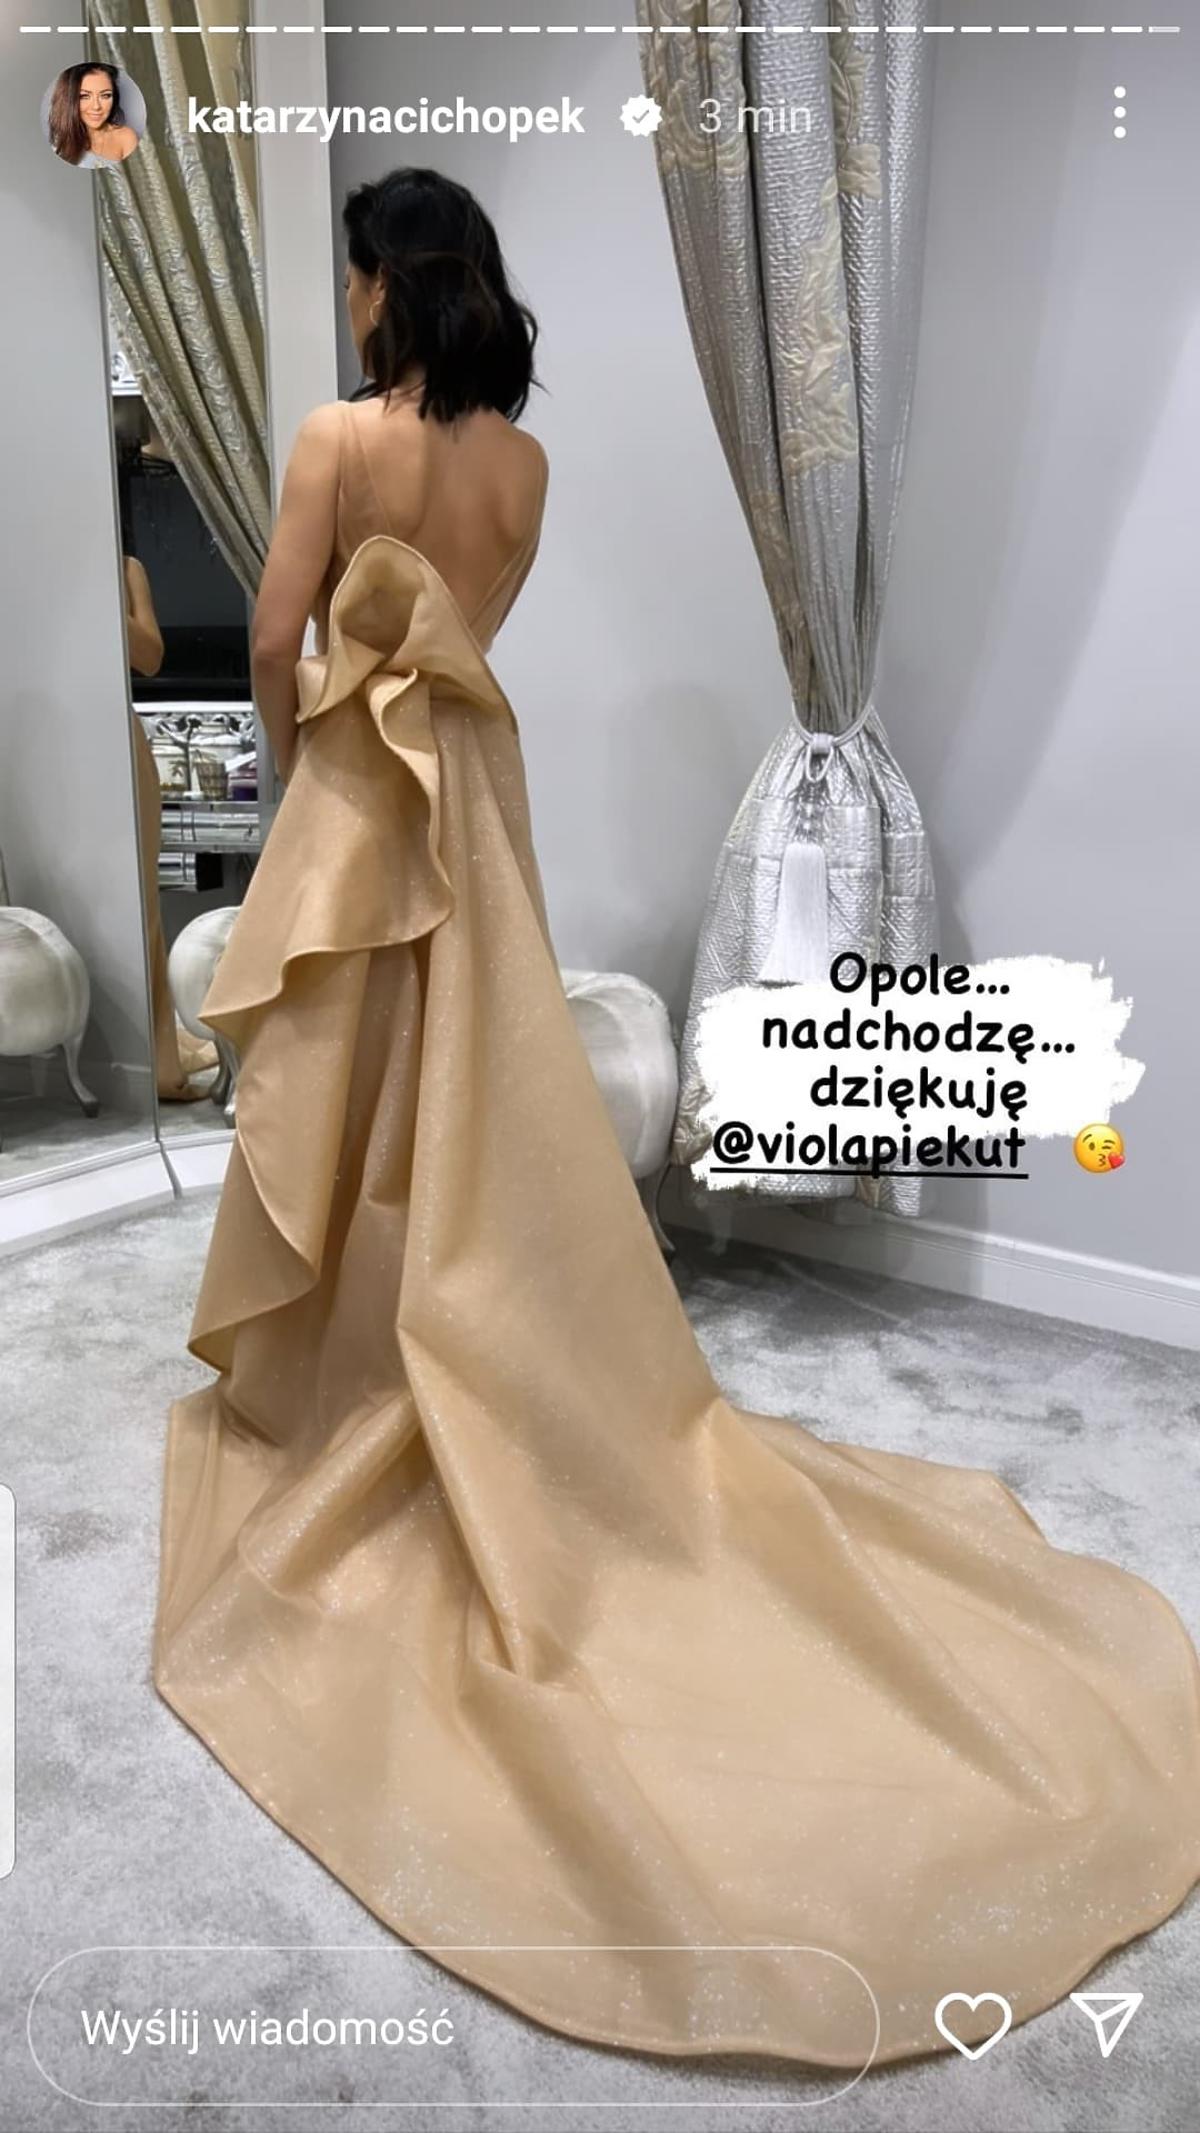 Katarzyna Cichopek pokazała suknię na festiwal w Opolu